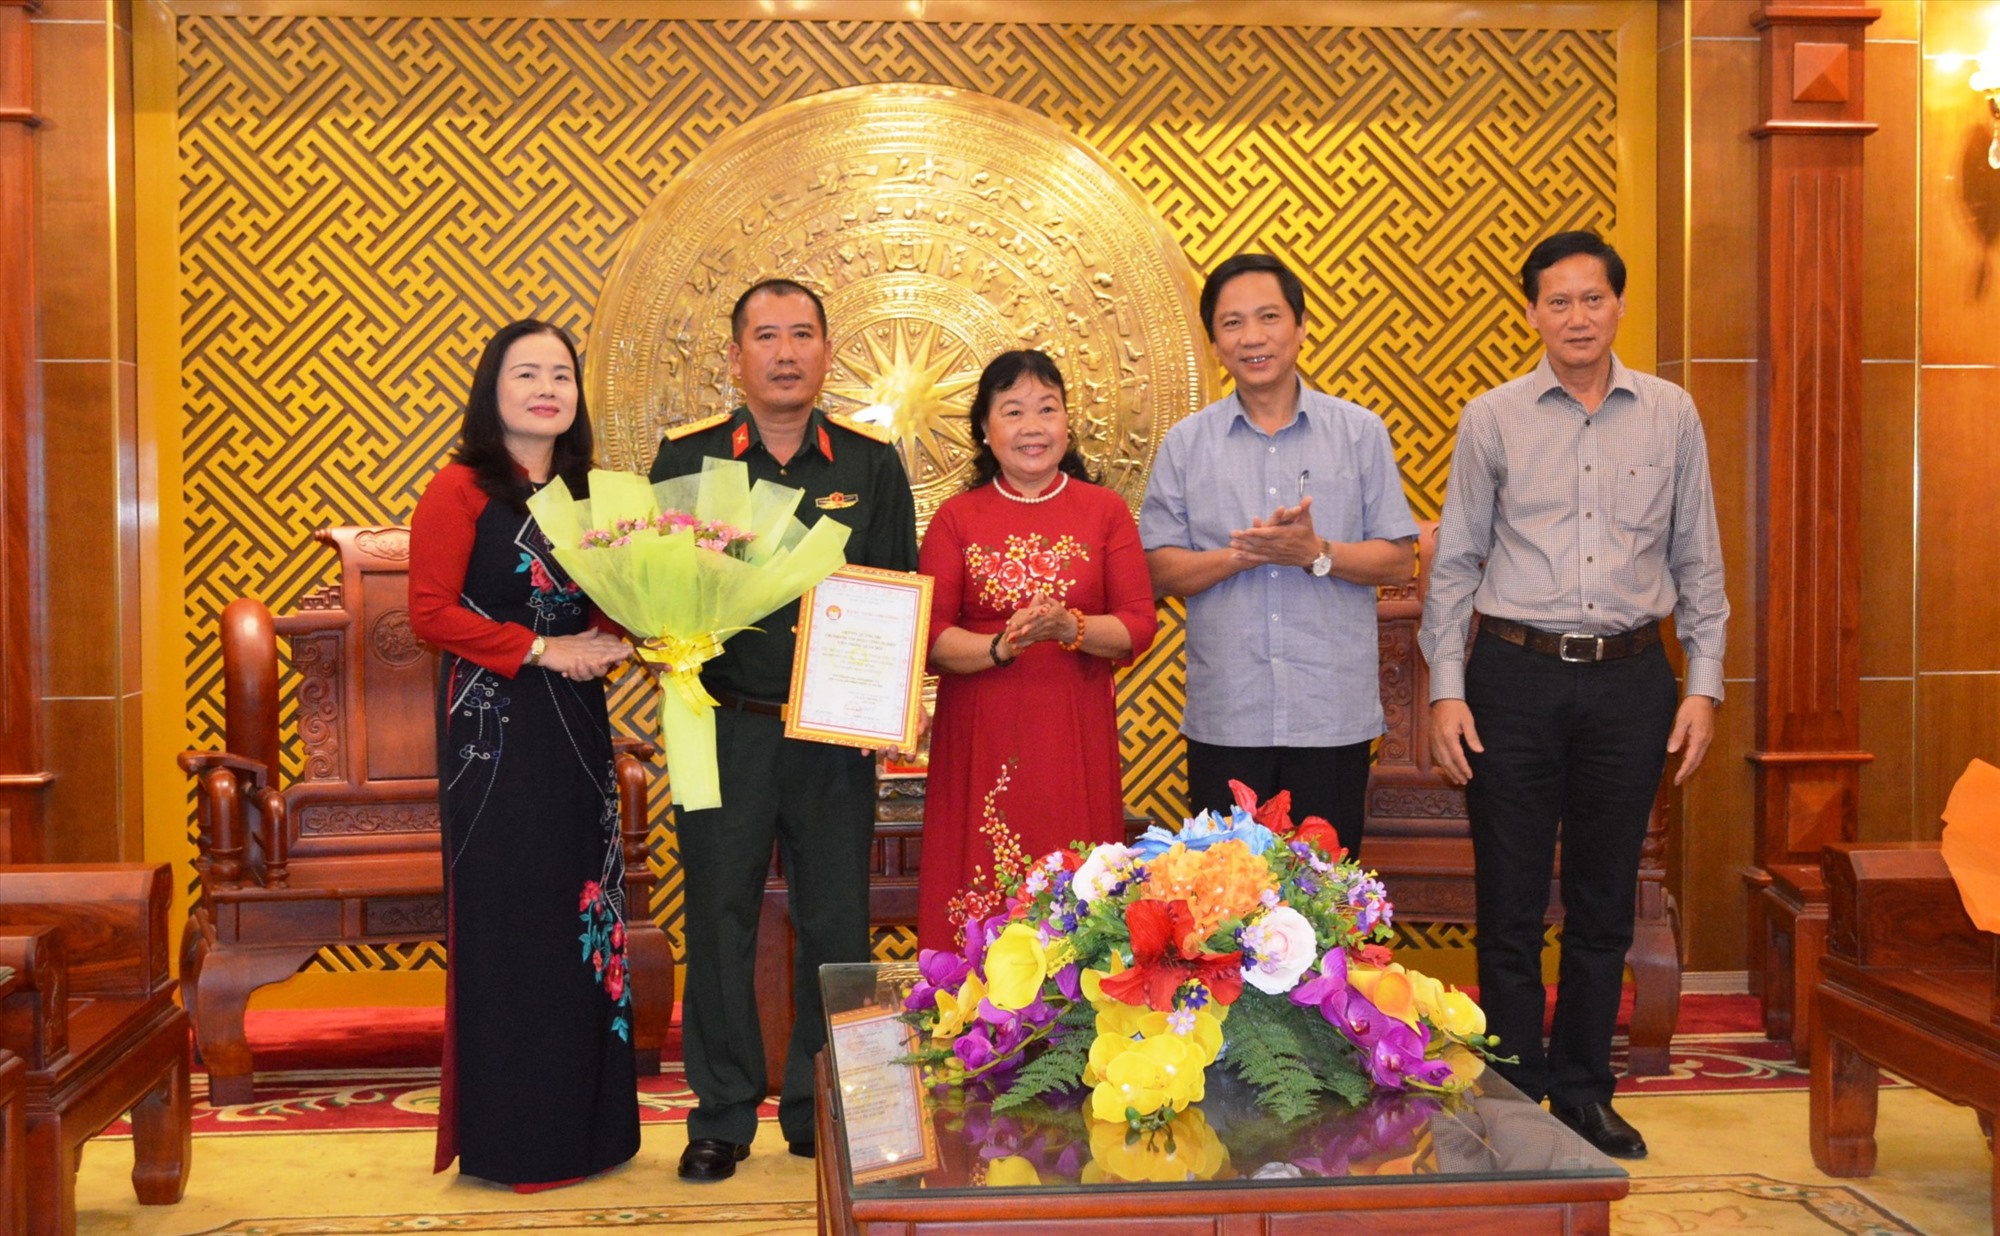 Hội Khuyến học tỉnh Quảng Trị trao bảng vàng ghi công cho Viettel vì sự đồng hành, hỗ trợ cho sự nghiệp giáo dục của tỉnh - Ảnh: ĐV